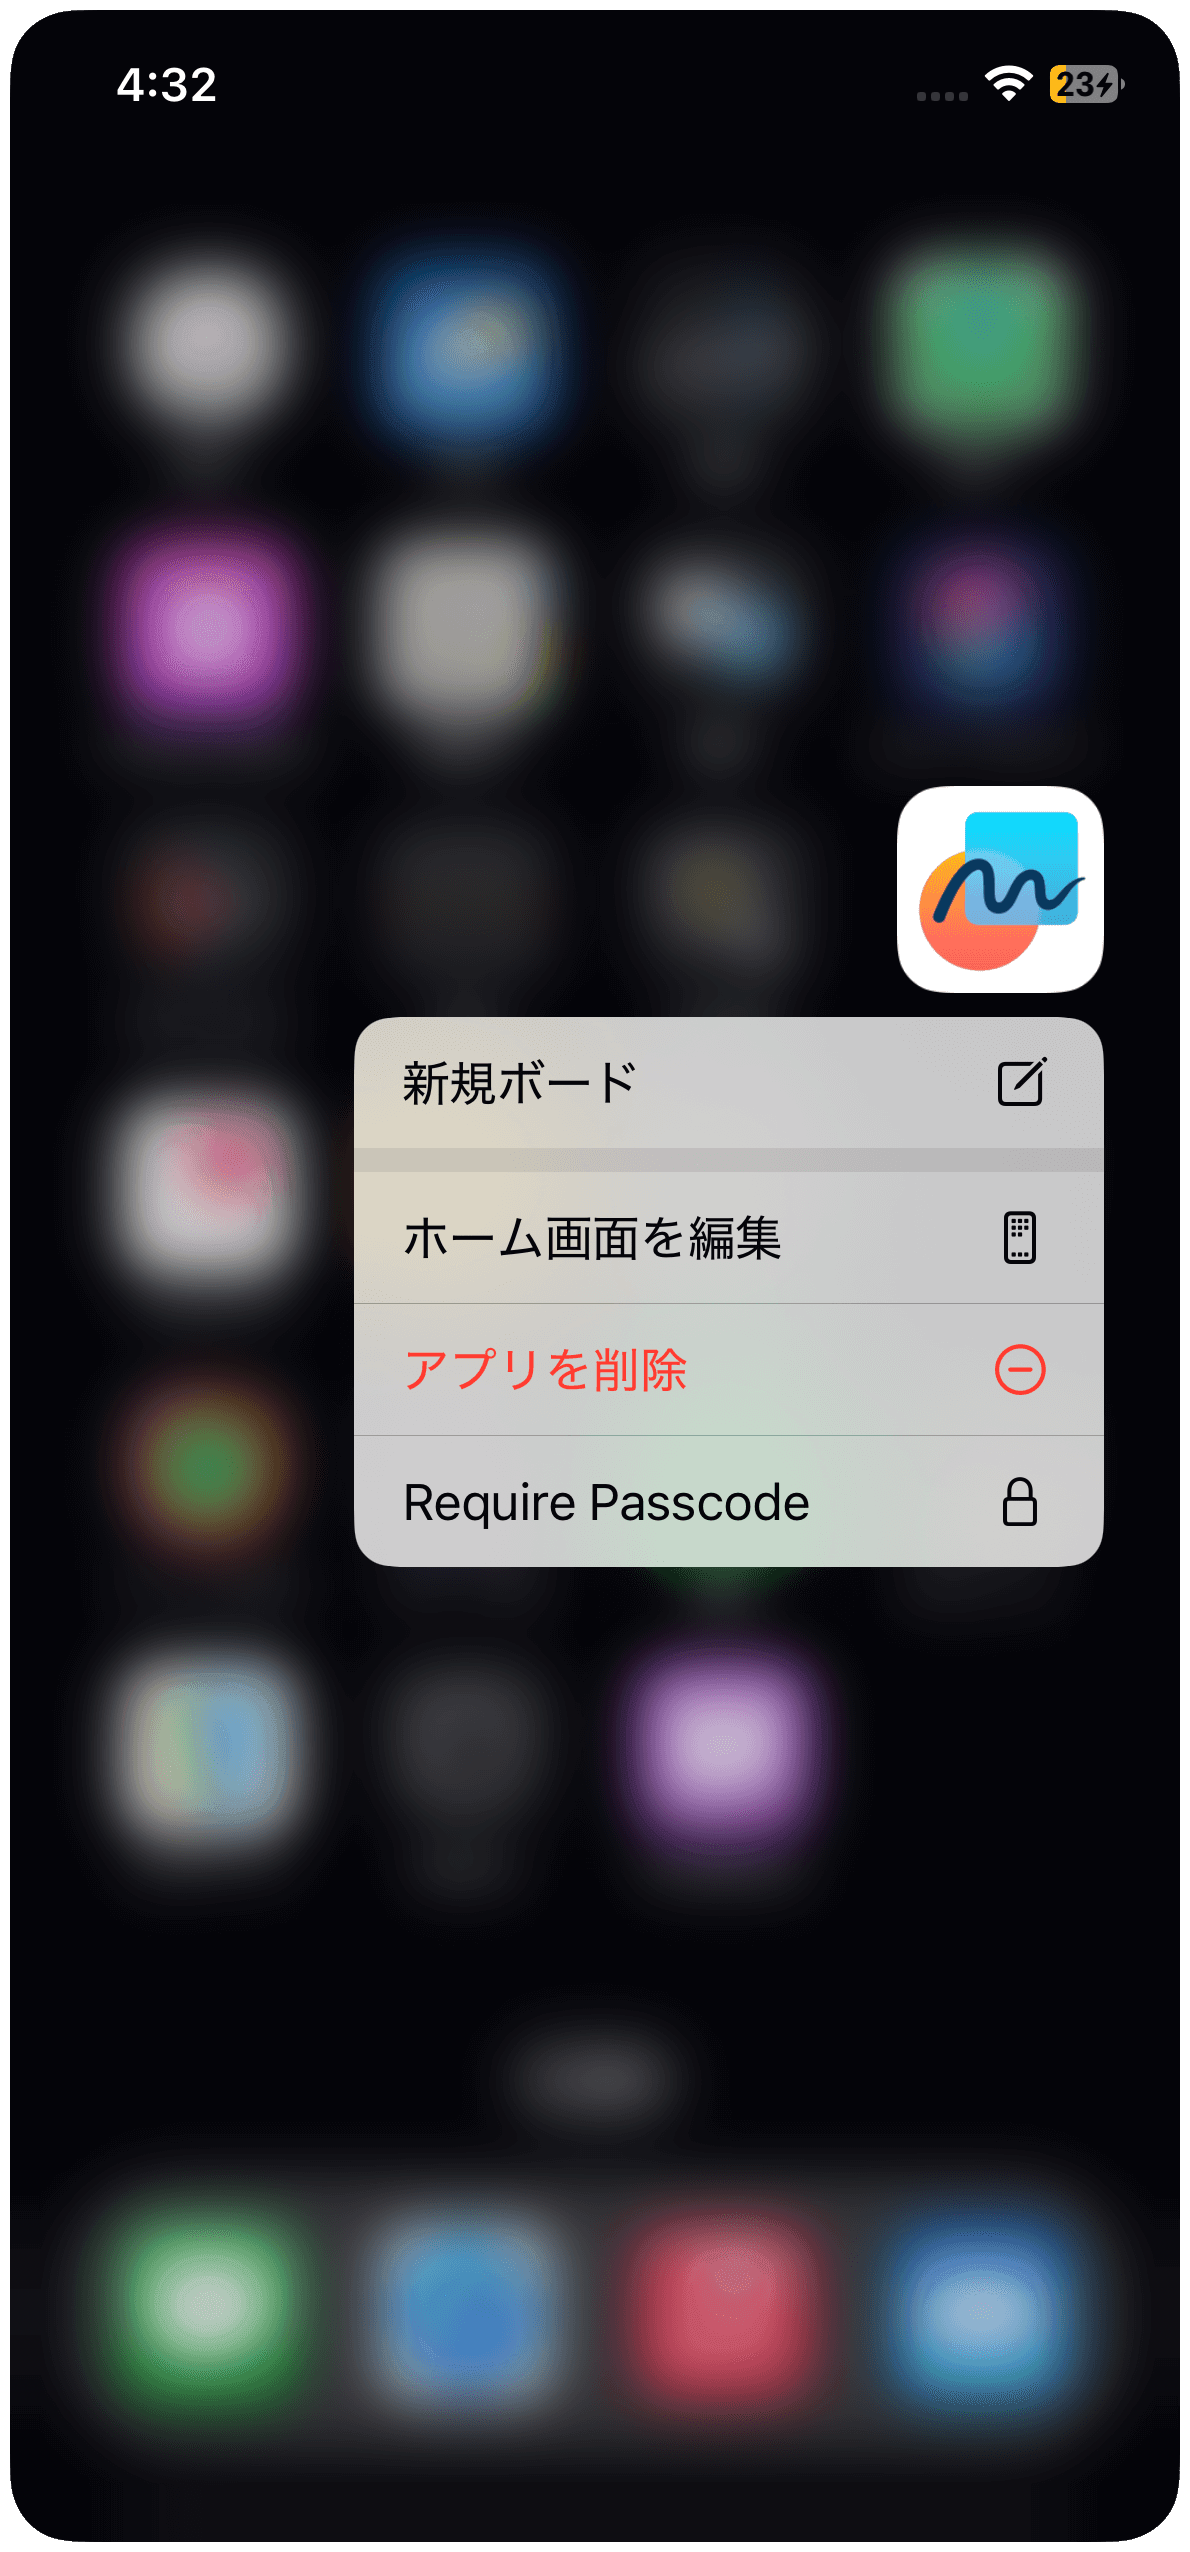 「Require Passcode」をタップ